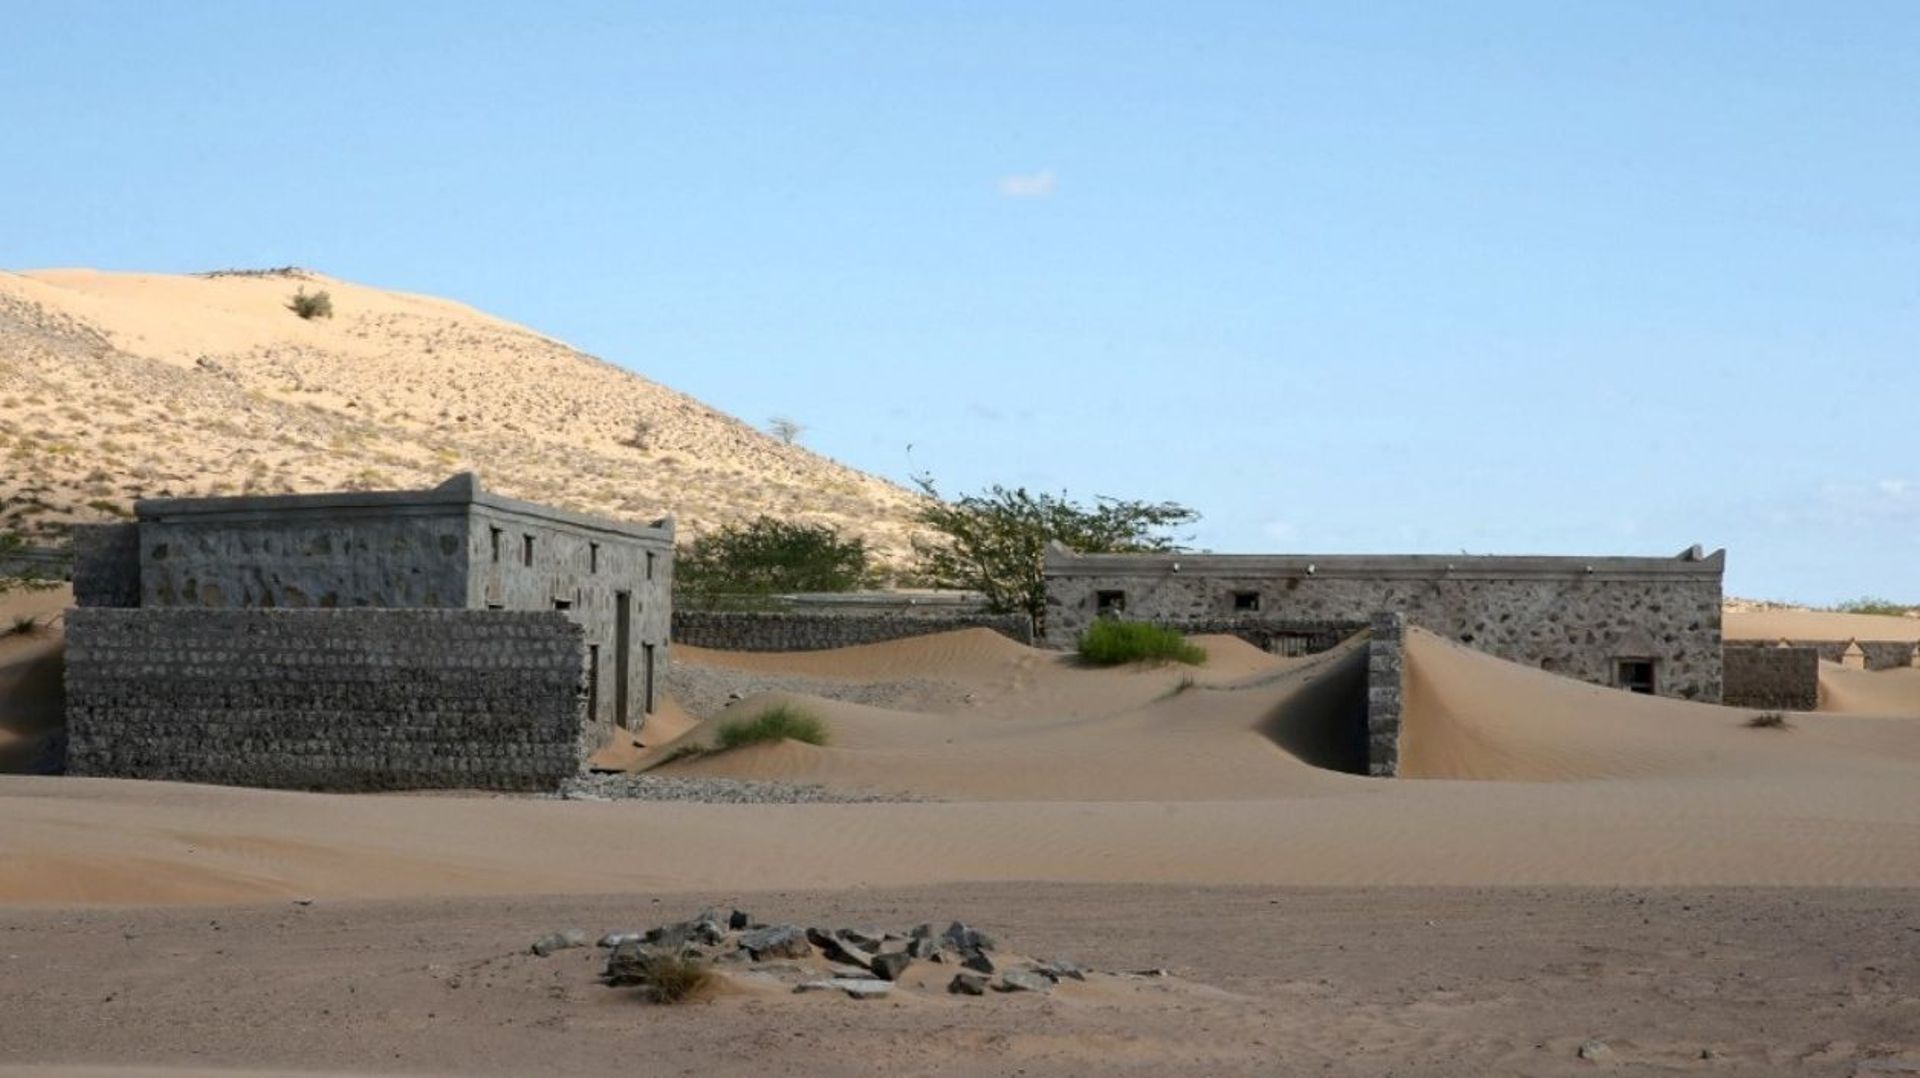 Quelques toits, des pans de mur et des morceaux de bois, c'est tout ce qui témoigne aujourd'hui de la présence passée d'une population sur le site de Wadi al-Murr.